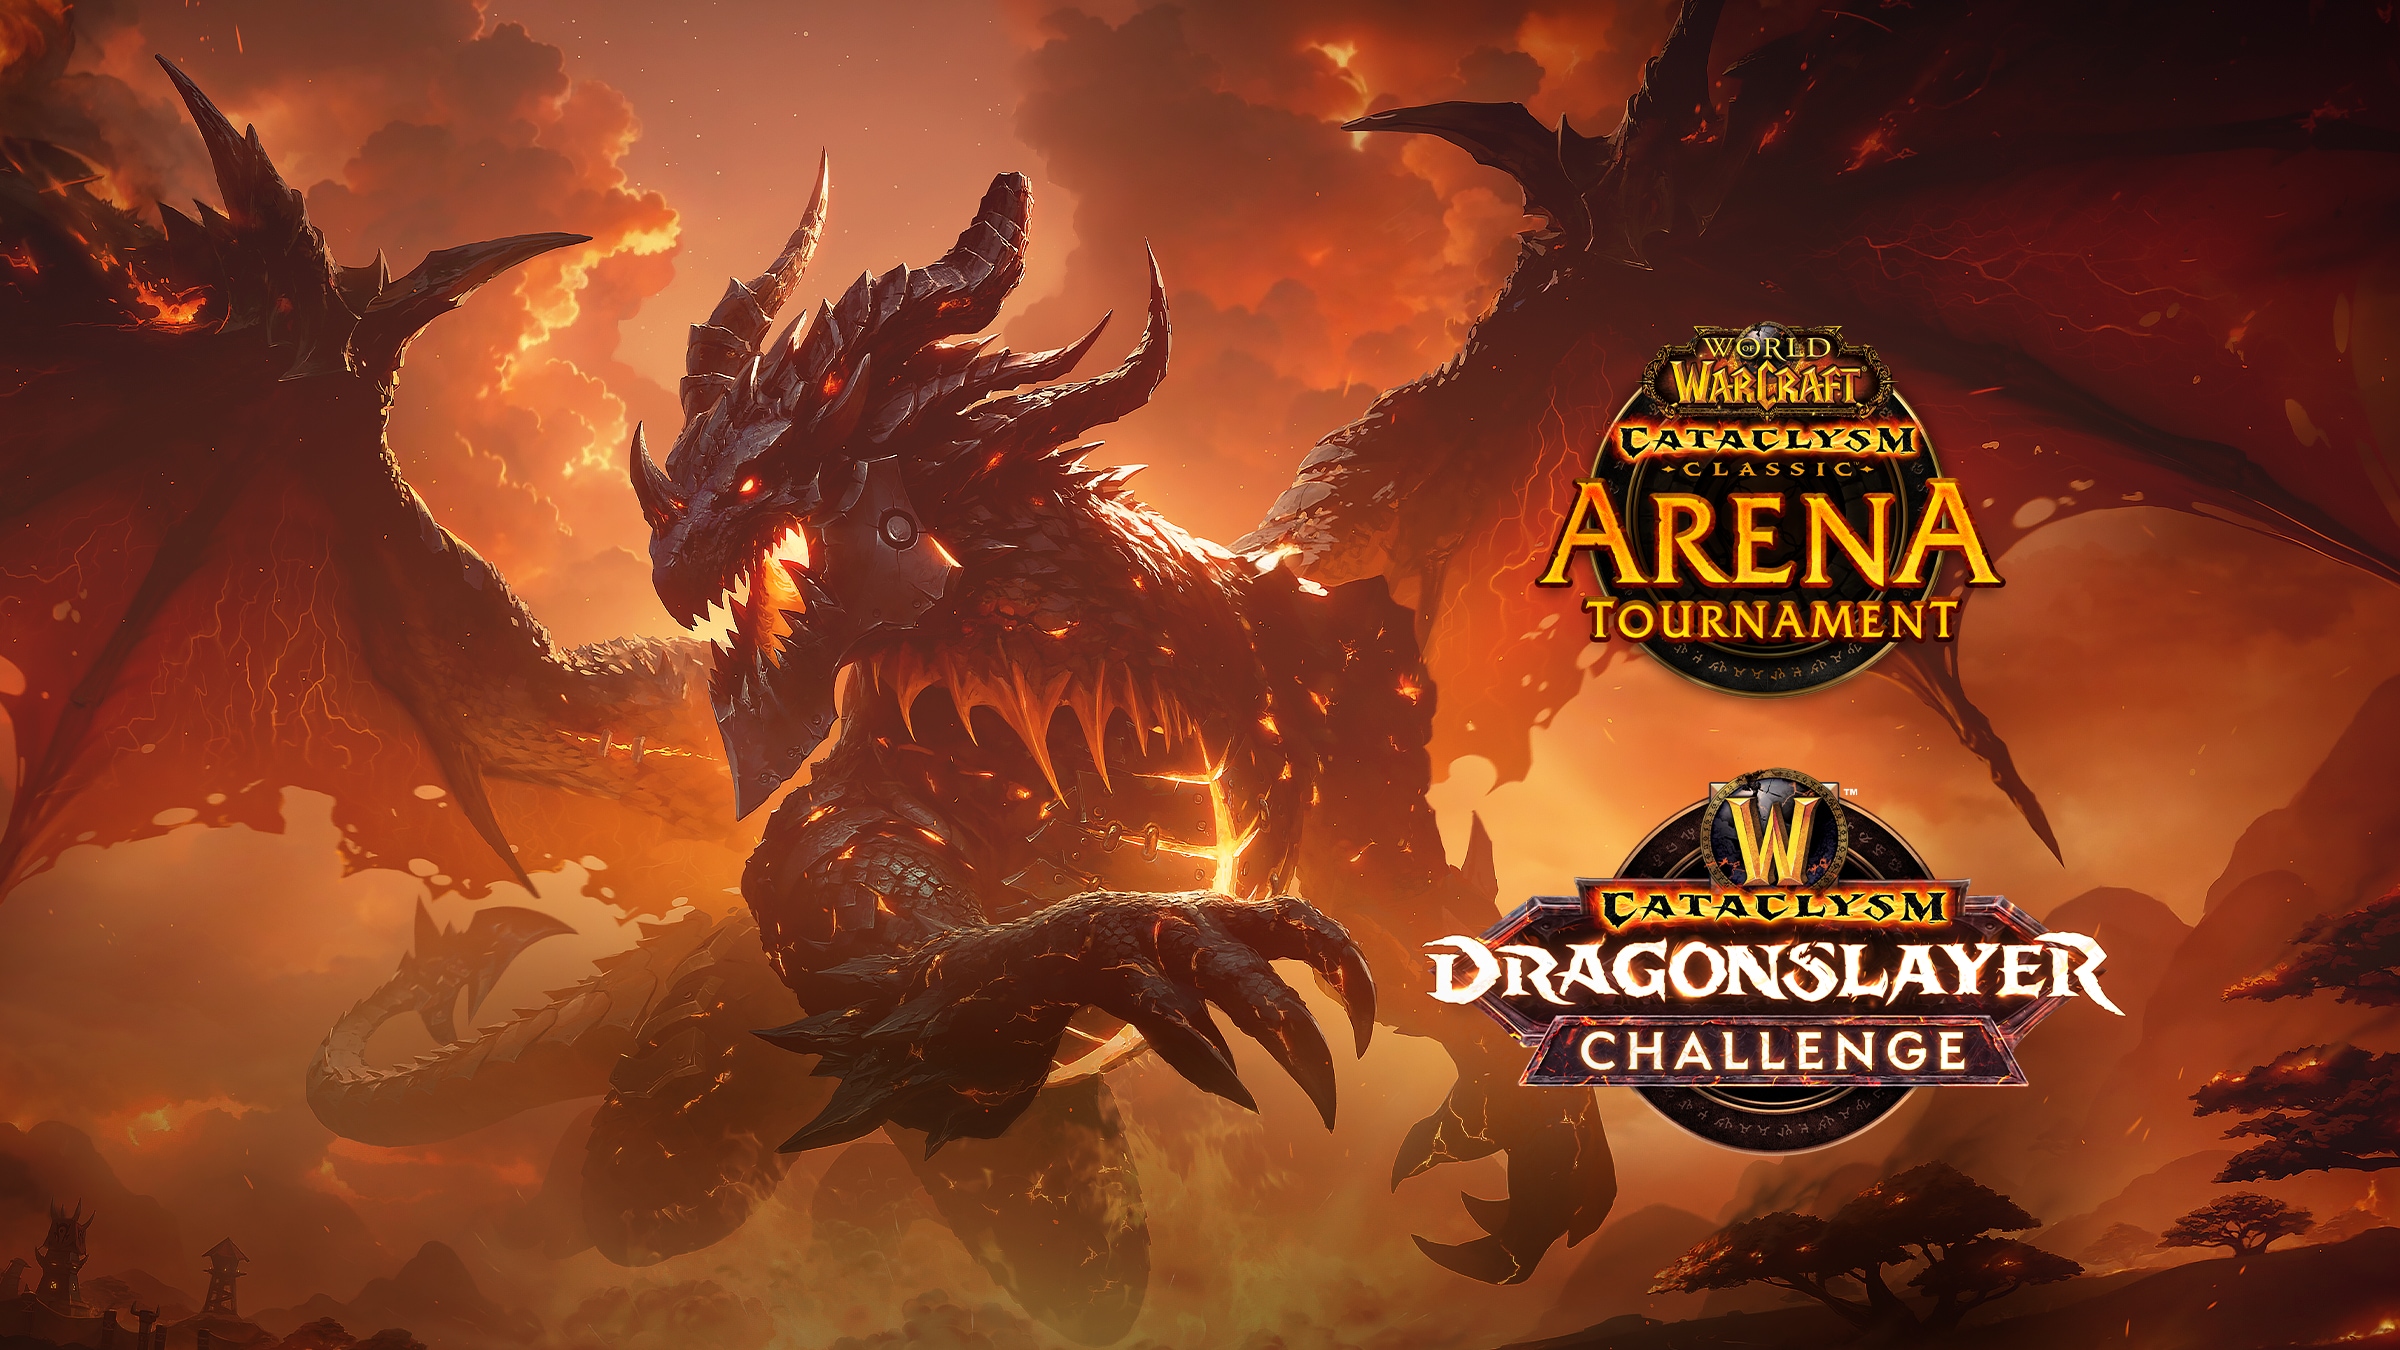 ¡Ya están aquí el Dragonslayer Challenge y el Cataclysm Arena Tournament!